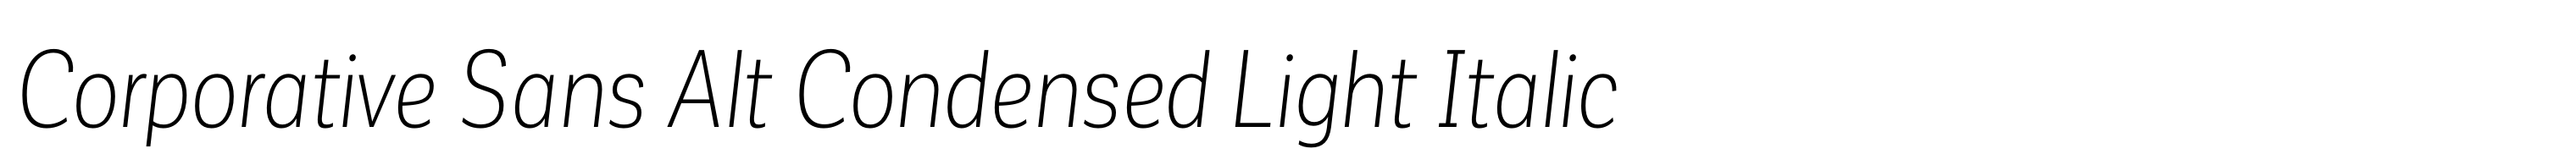 Corporative Sans Alt Condensed Light Italic